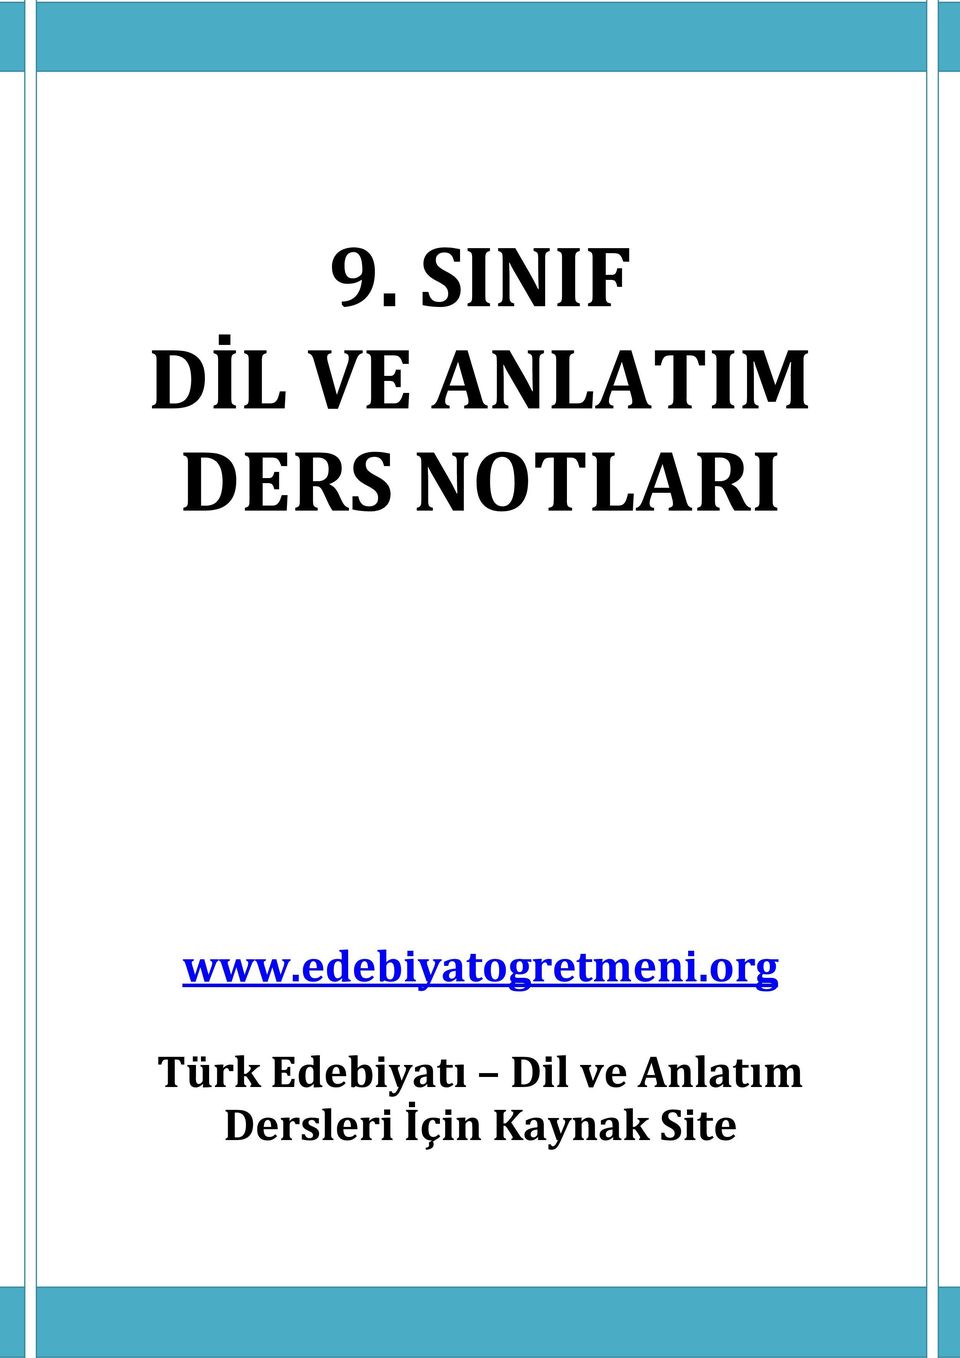 org Türk Edebiyatı Dil ve Anlatım